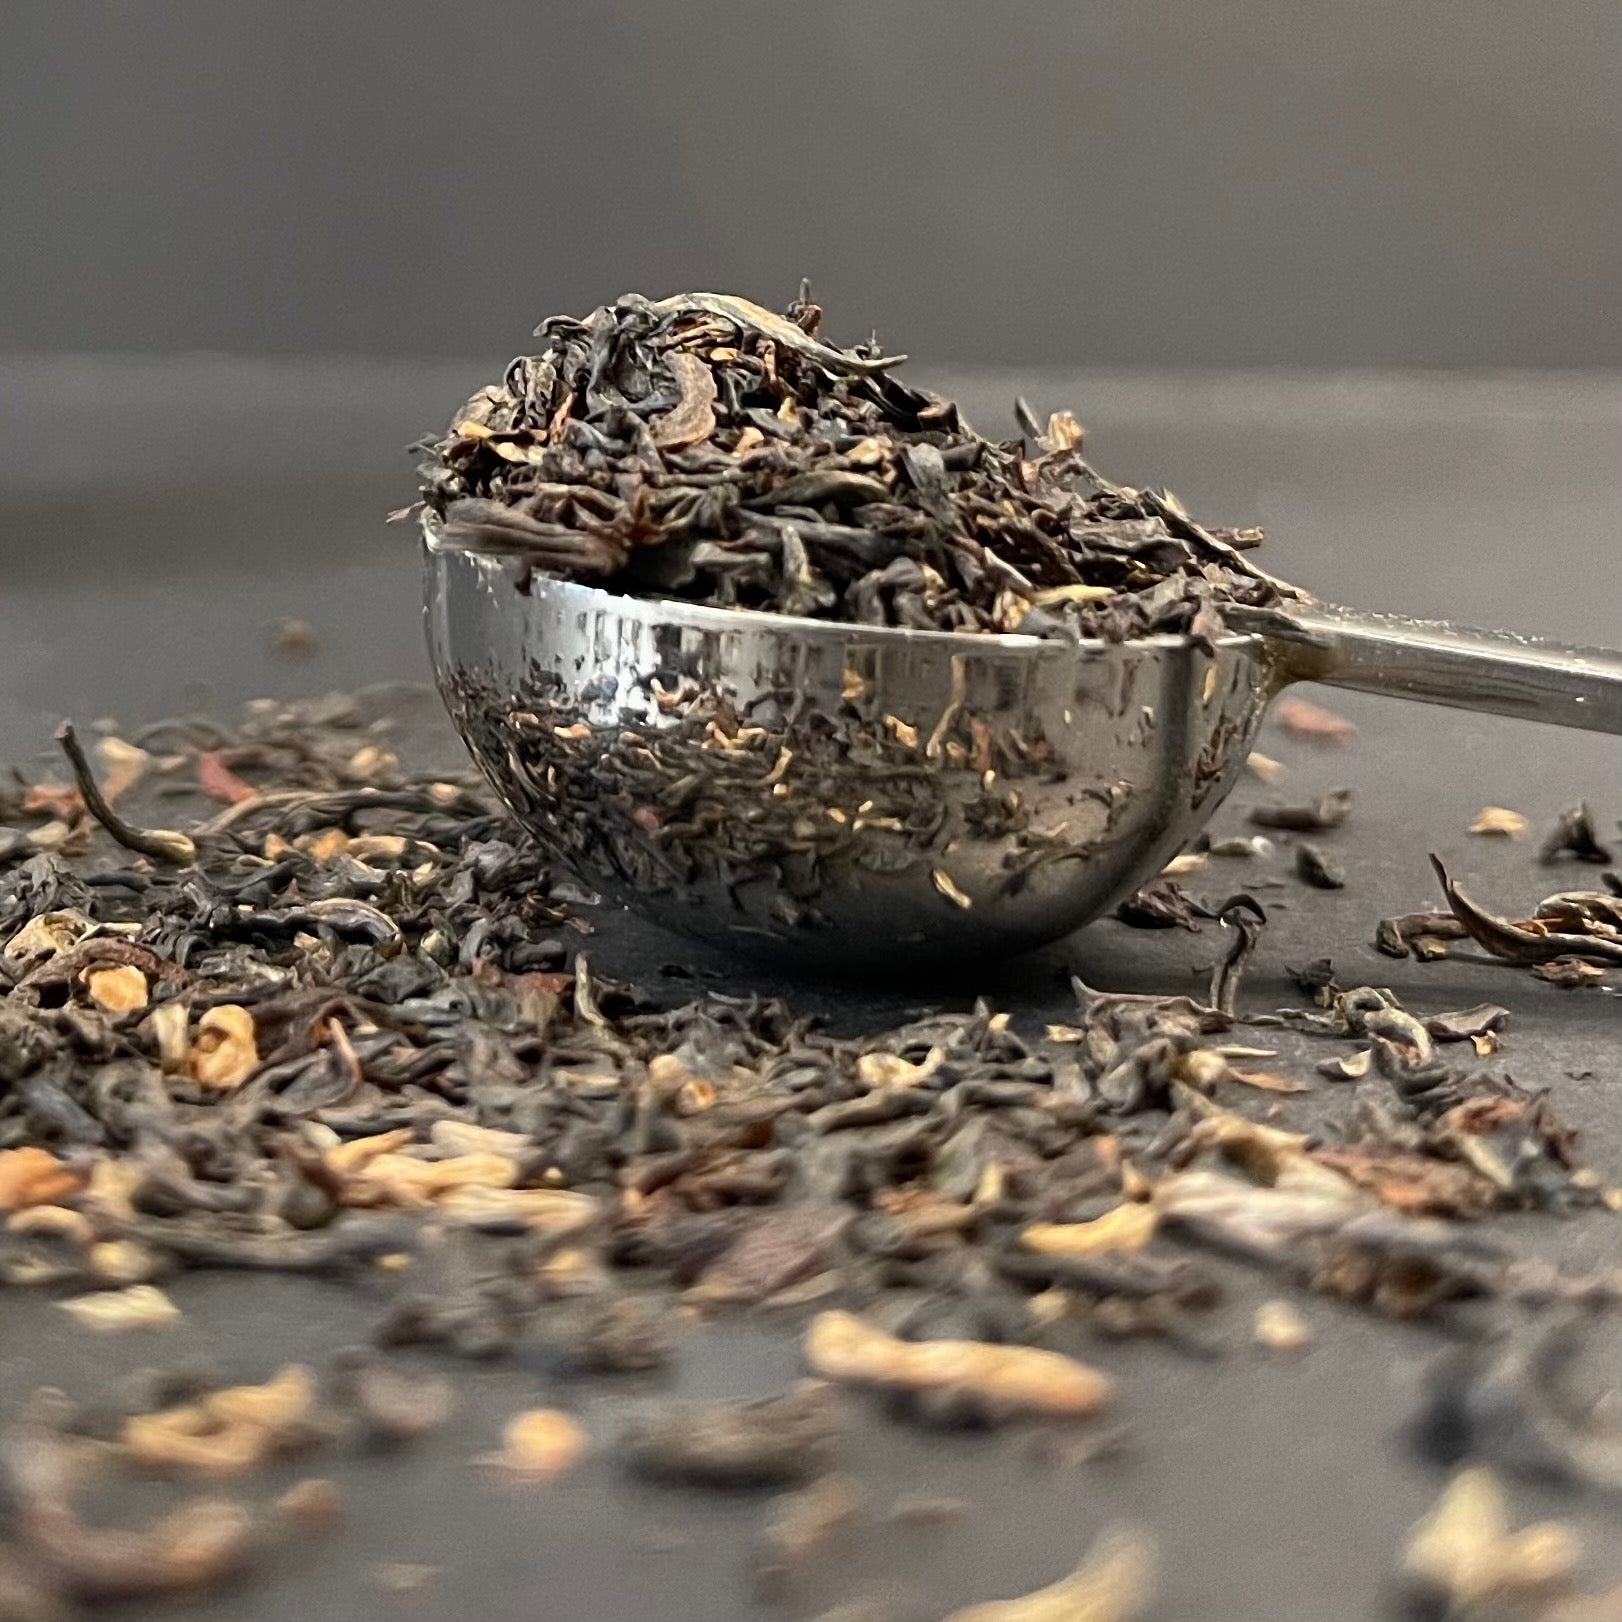 Assam Gold | Single Origin Luxury Black Tea | Loose Leaf Tea | The Cove Tea Company | Vancouver BC Canada